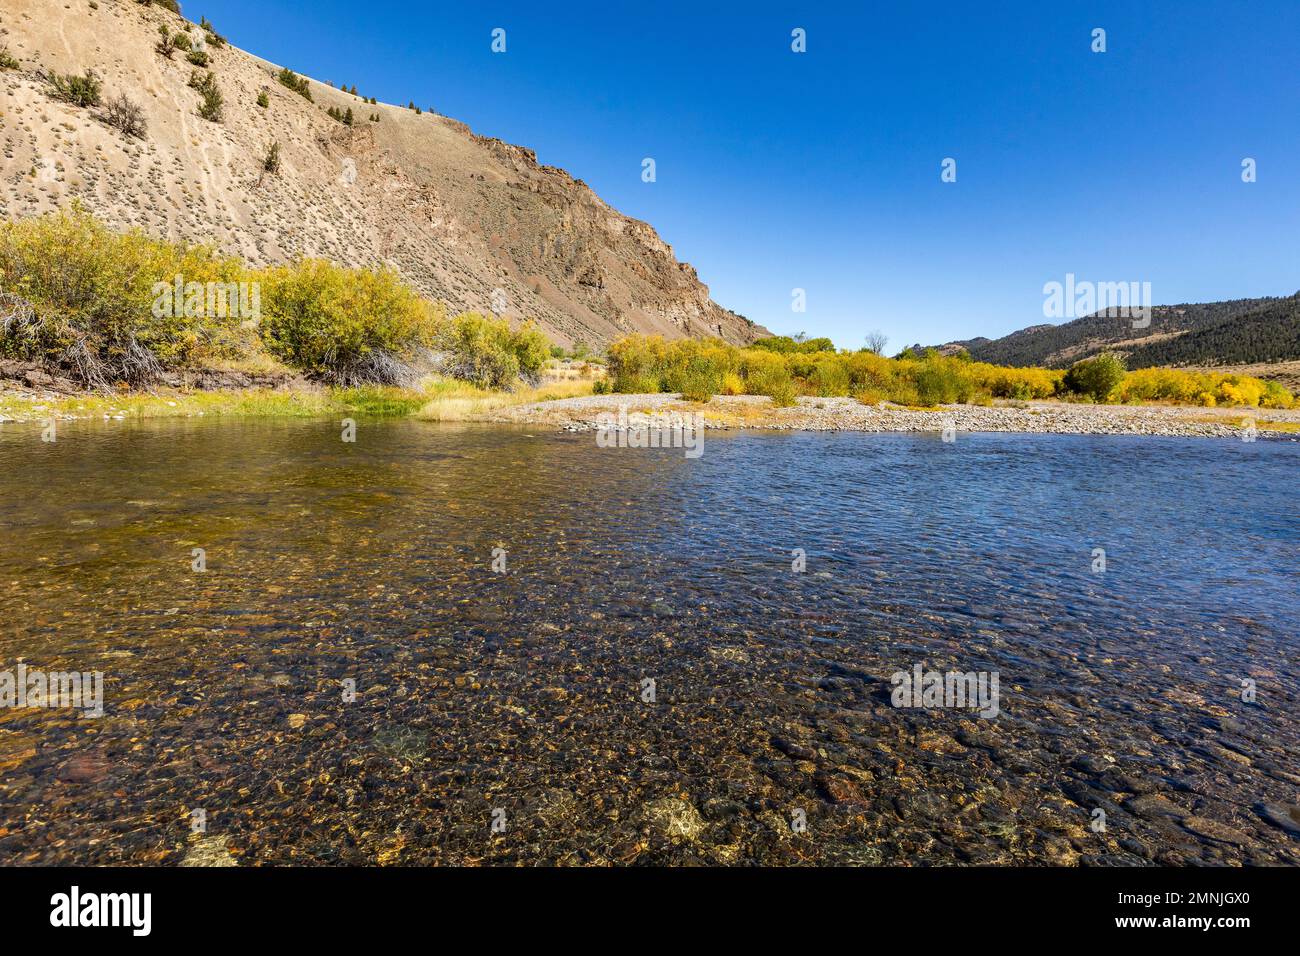 États-Unis, Idaho, Sun Valley, ruisseau lisse et clair dans la vallée Banque D'Images